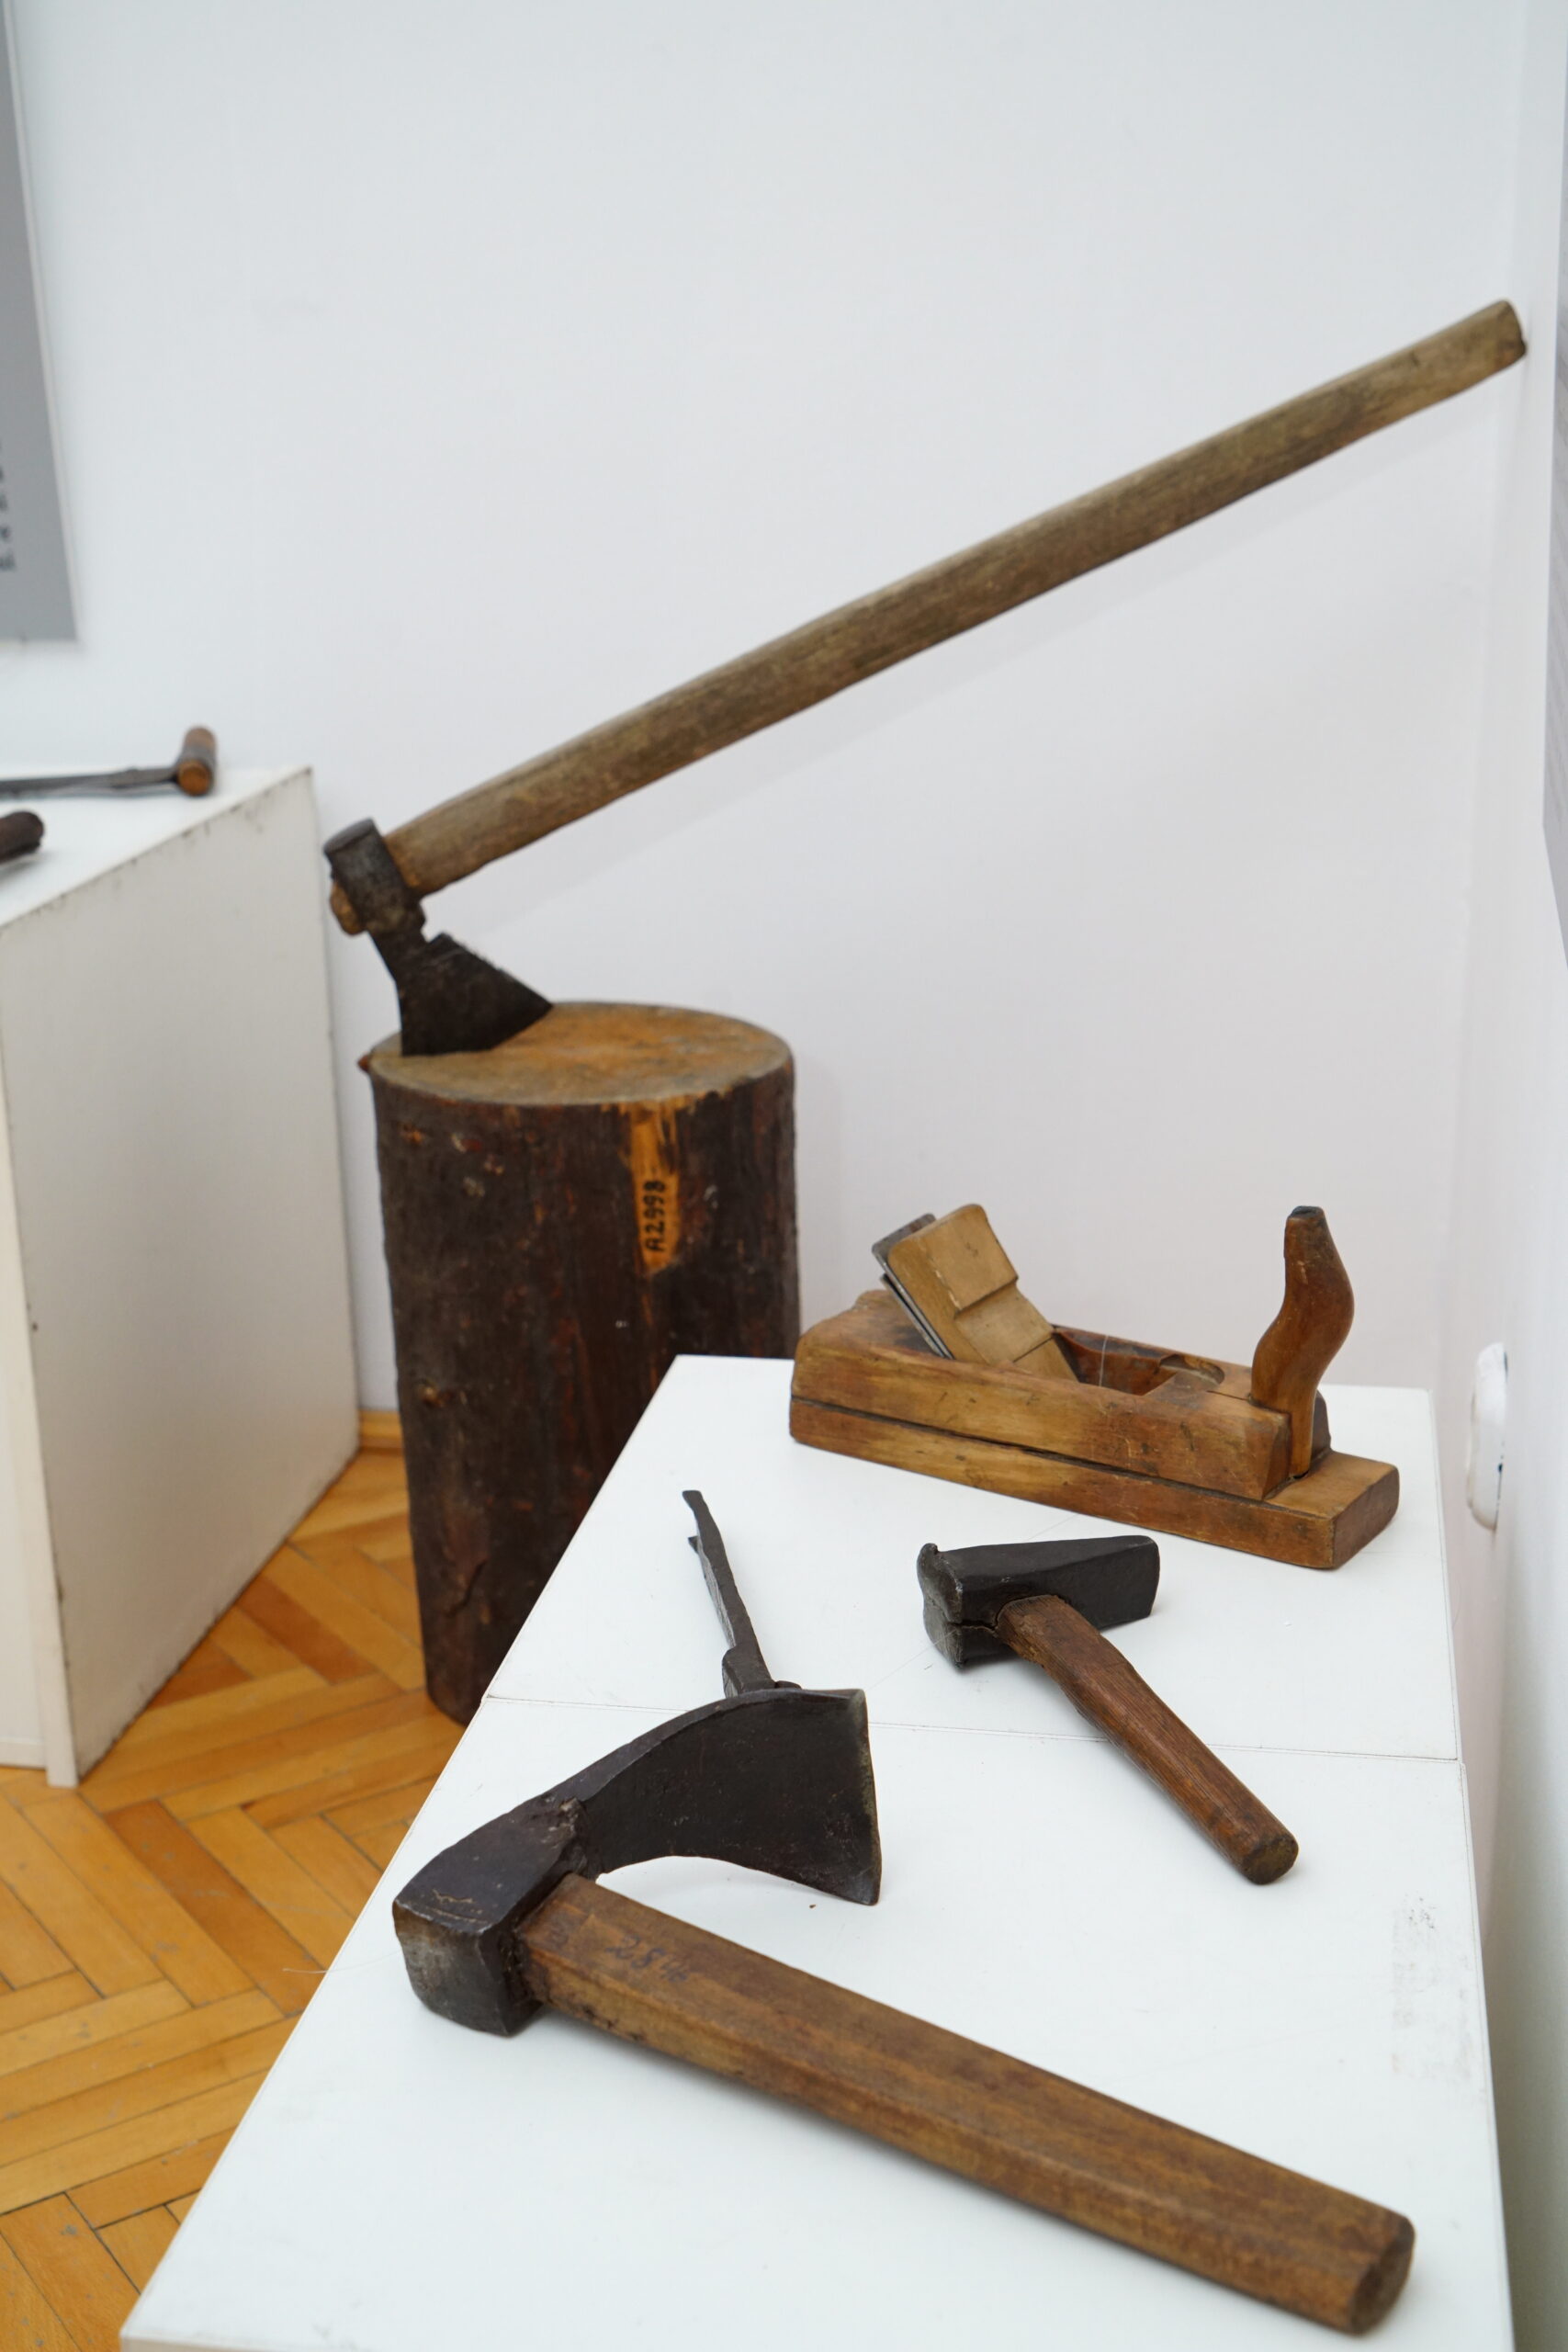 Artefacte din cadrul expoziției inovative: unelte de dulgherit